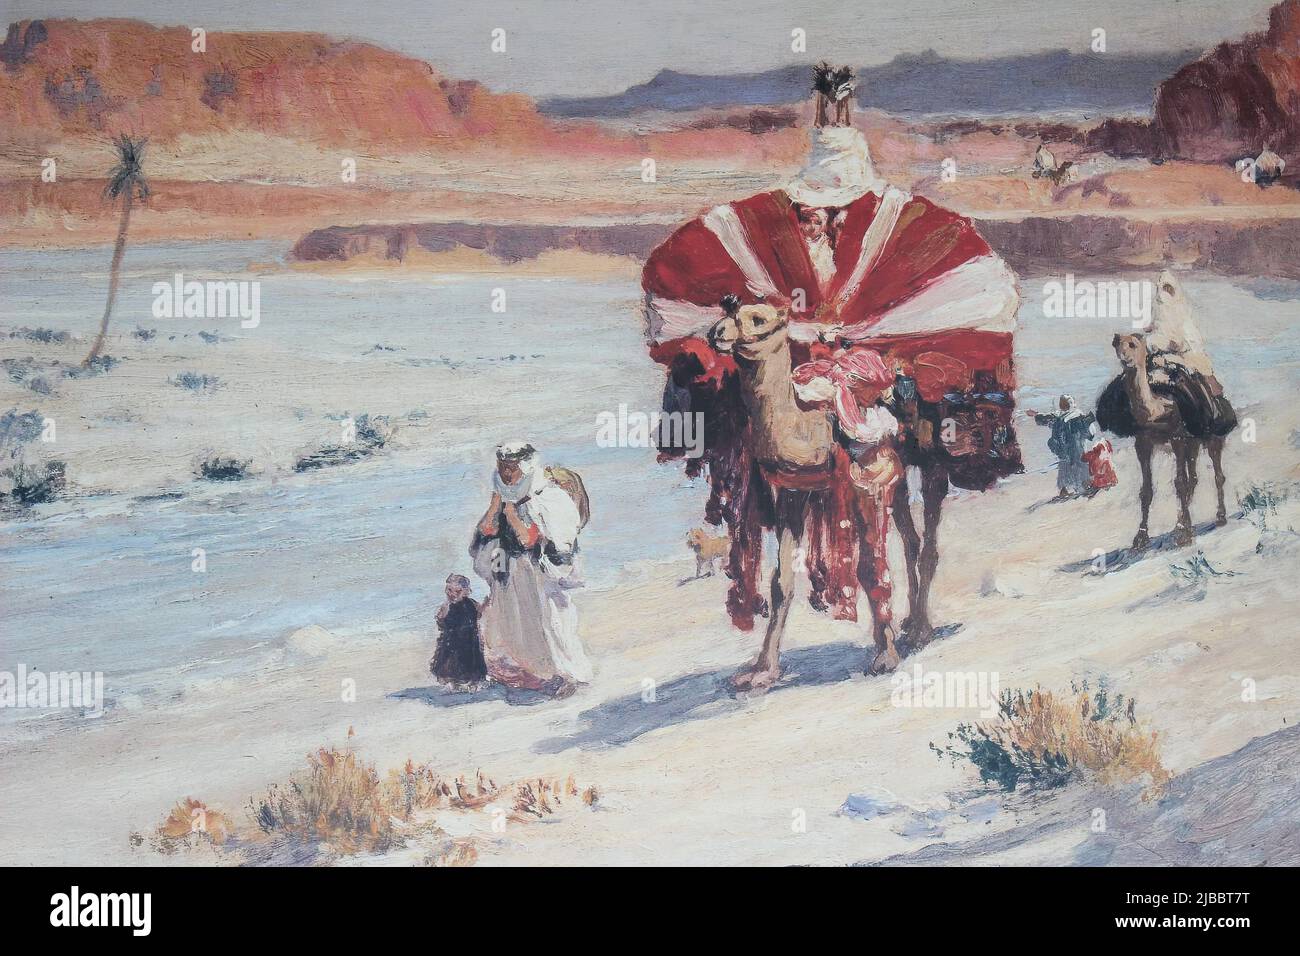 Art Caravan à dos de chameau, Jordanie Banque D'Images